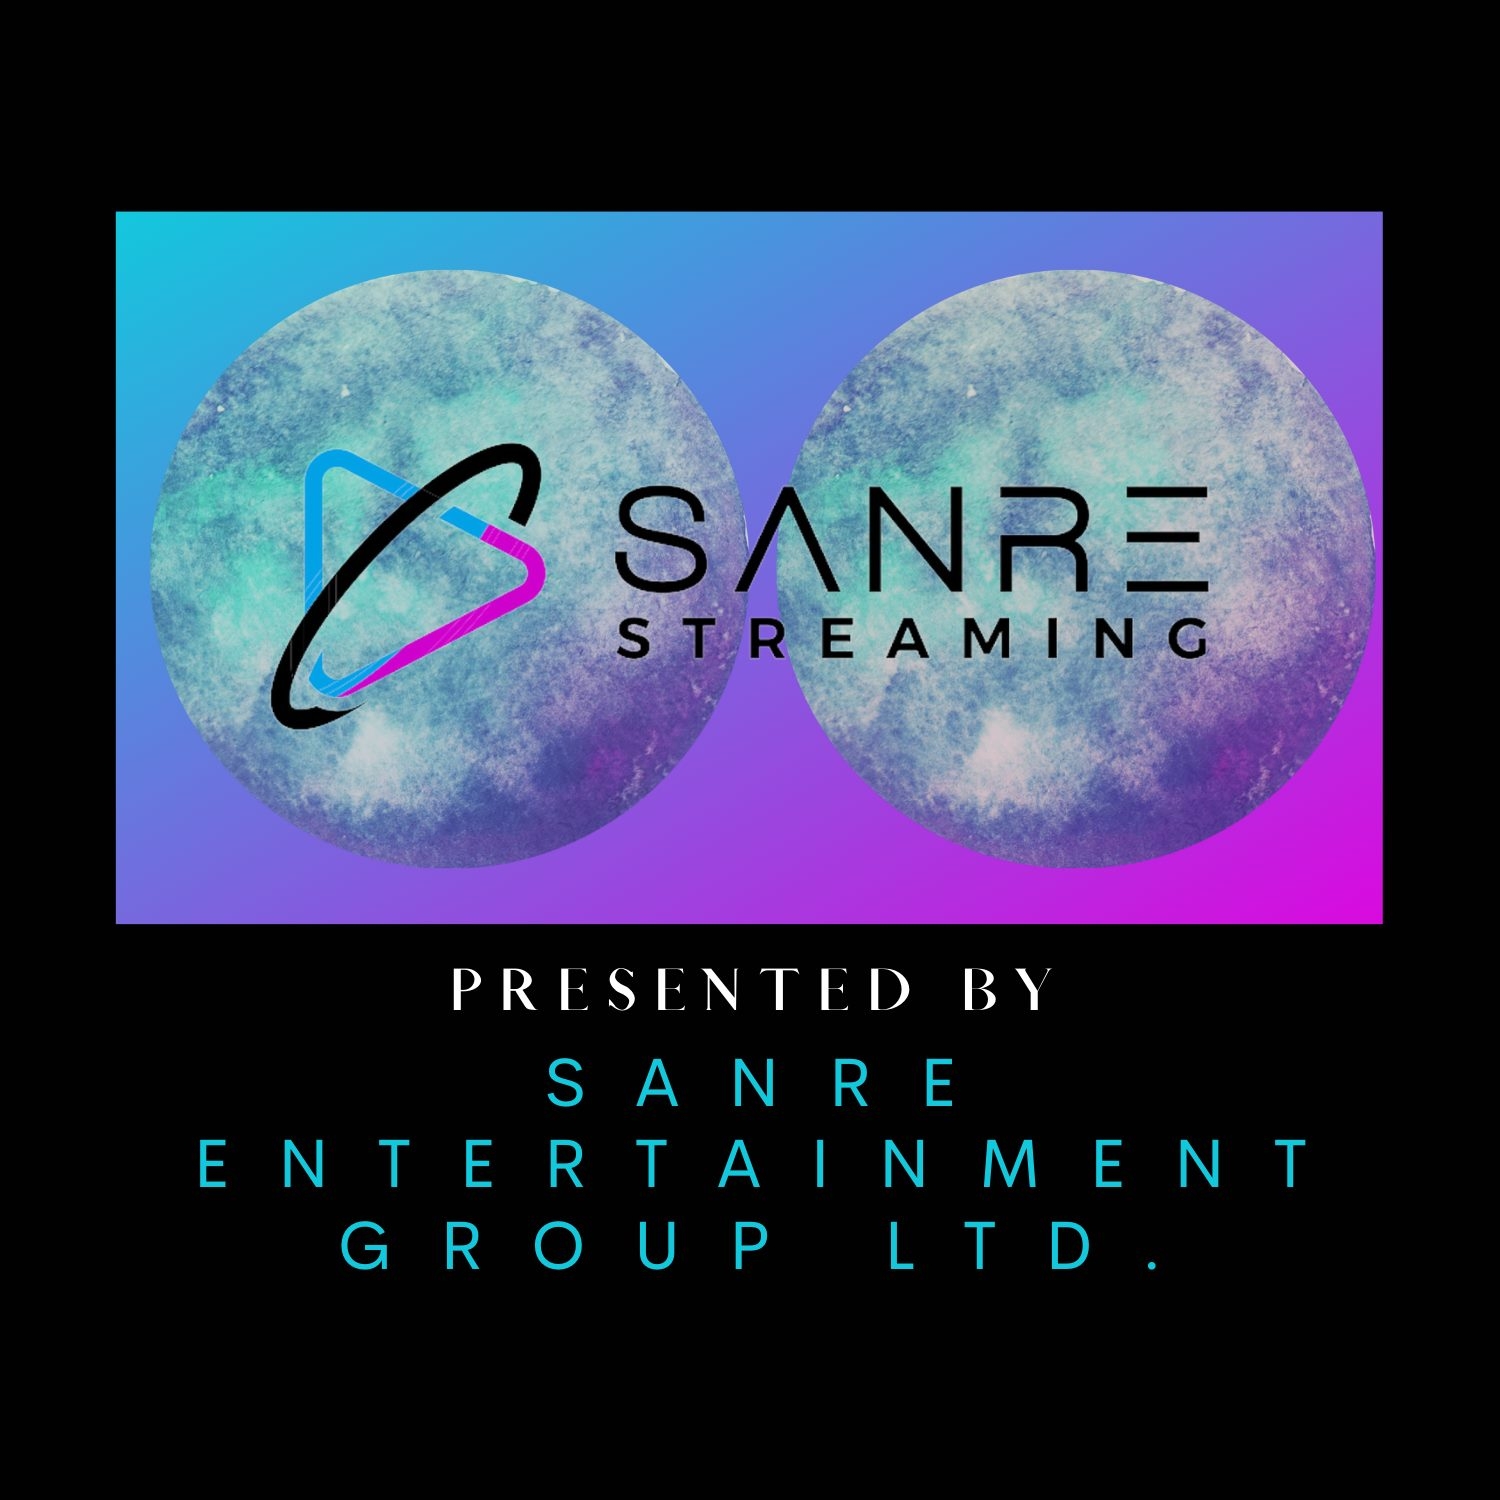 Sanre Entertainment Group Ltd